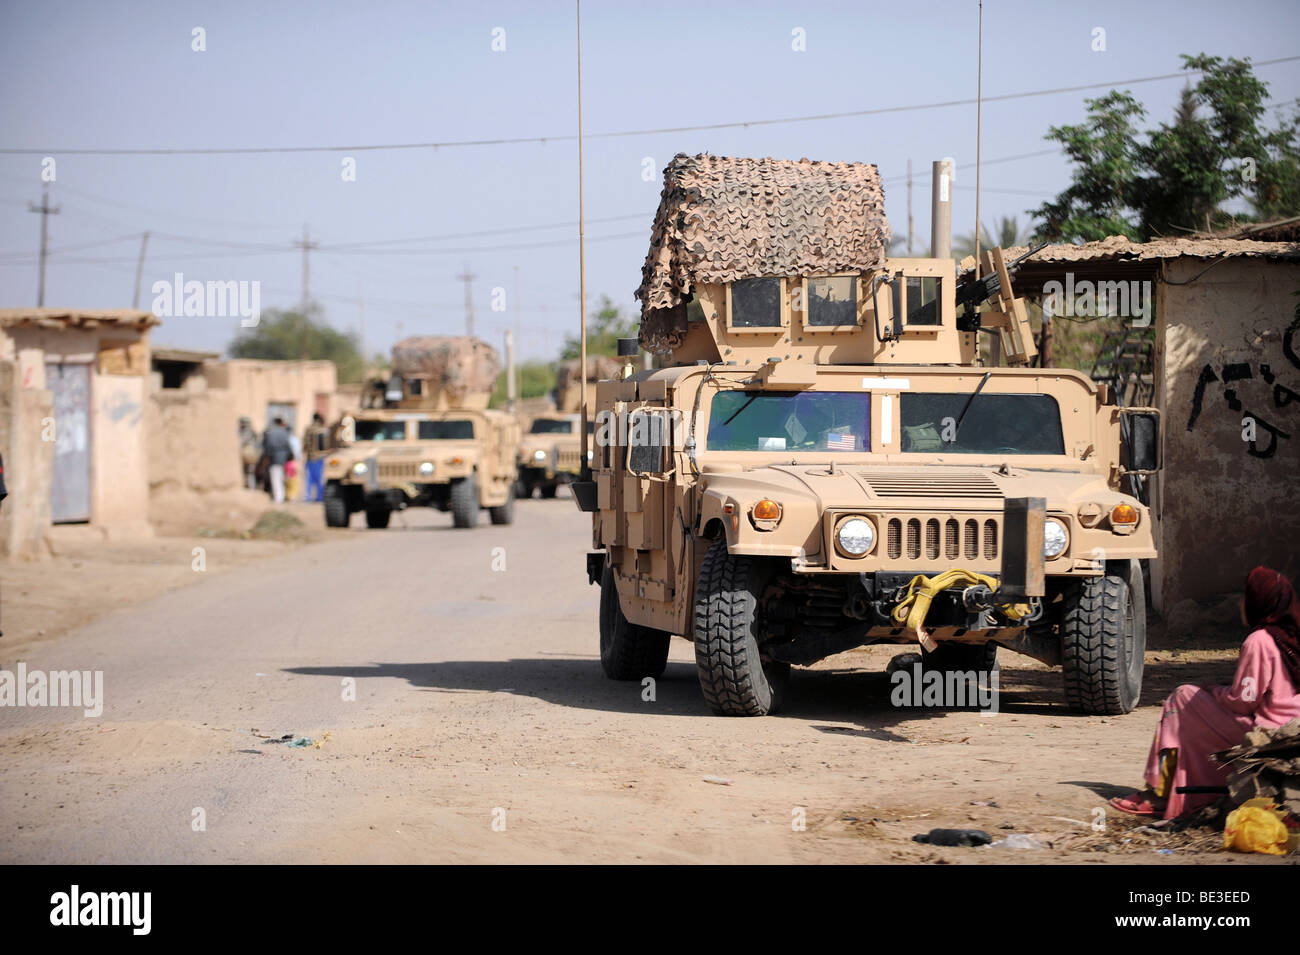 9 aprile 2009 - Humvee del comportamento di sicurezza durante una pattuglia nel villaggio di Abo atei, a sostegno dell'Operazione Iraqi Freedom. Foto Stock